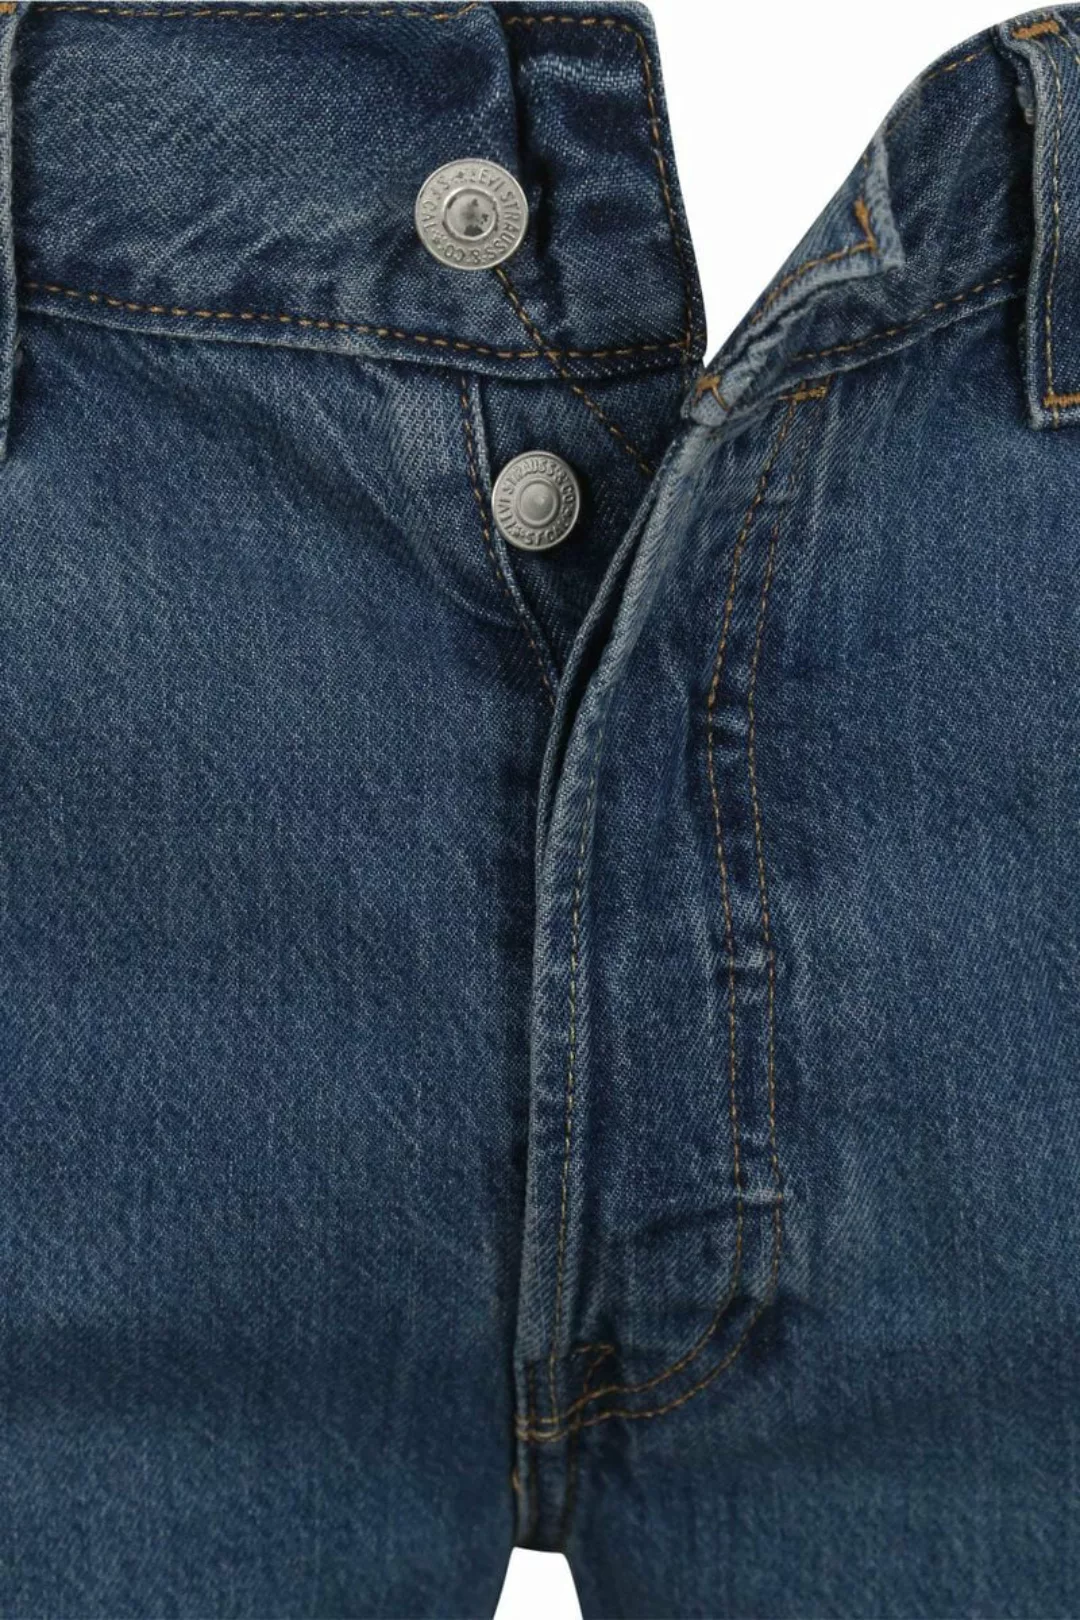 Levi’s 501 Jeans Mid Blau - Größe W 34 - L 34 günstig online kaufen